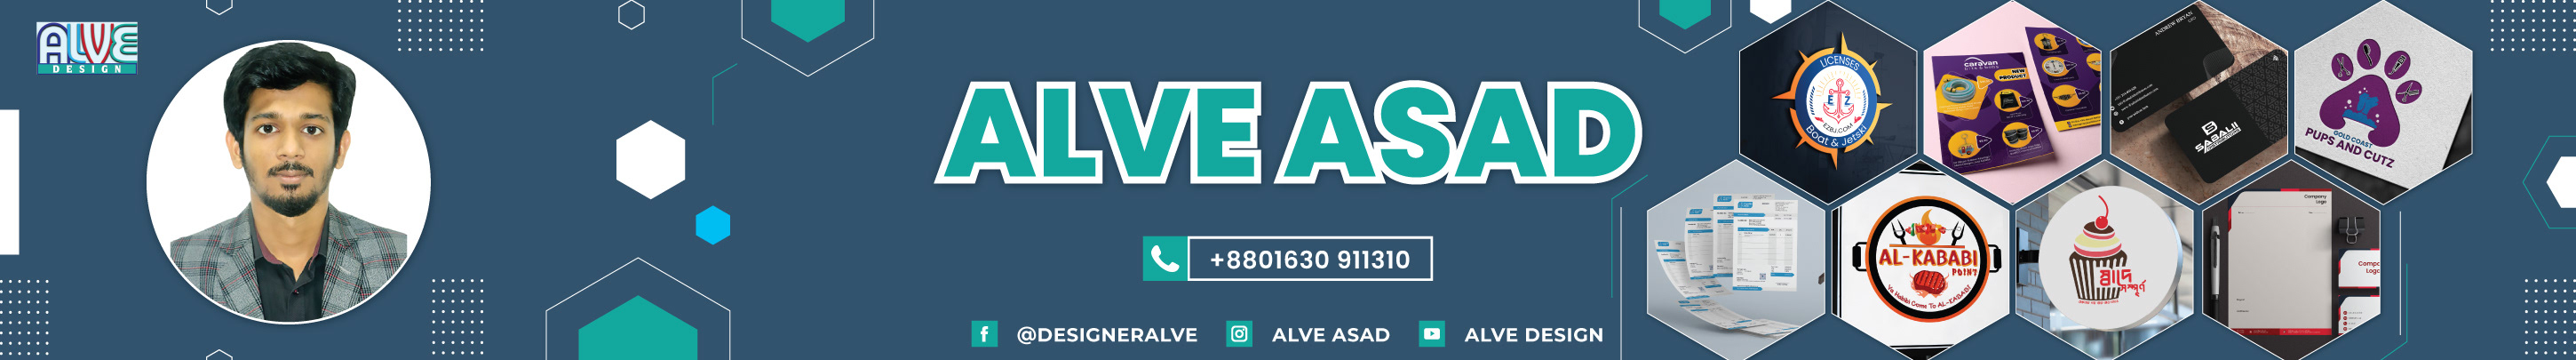 Alve Asad's profile banner